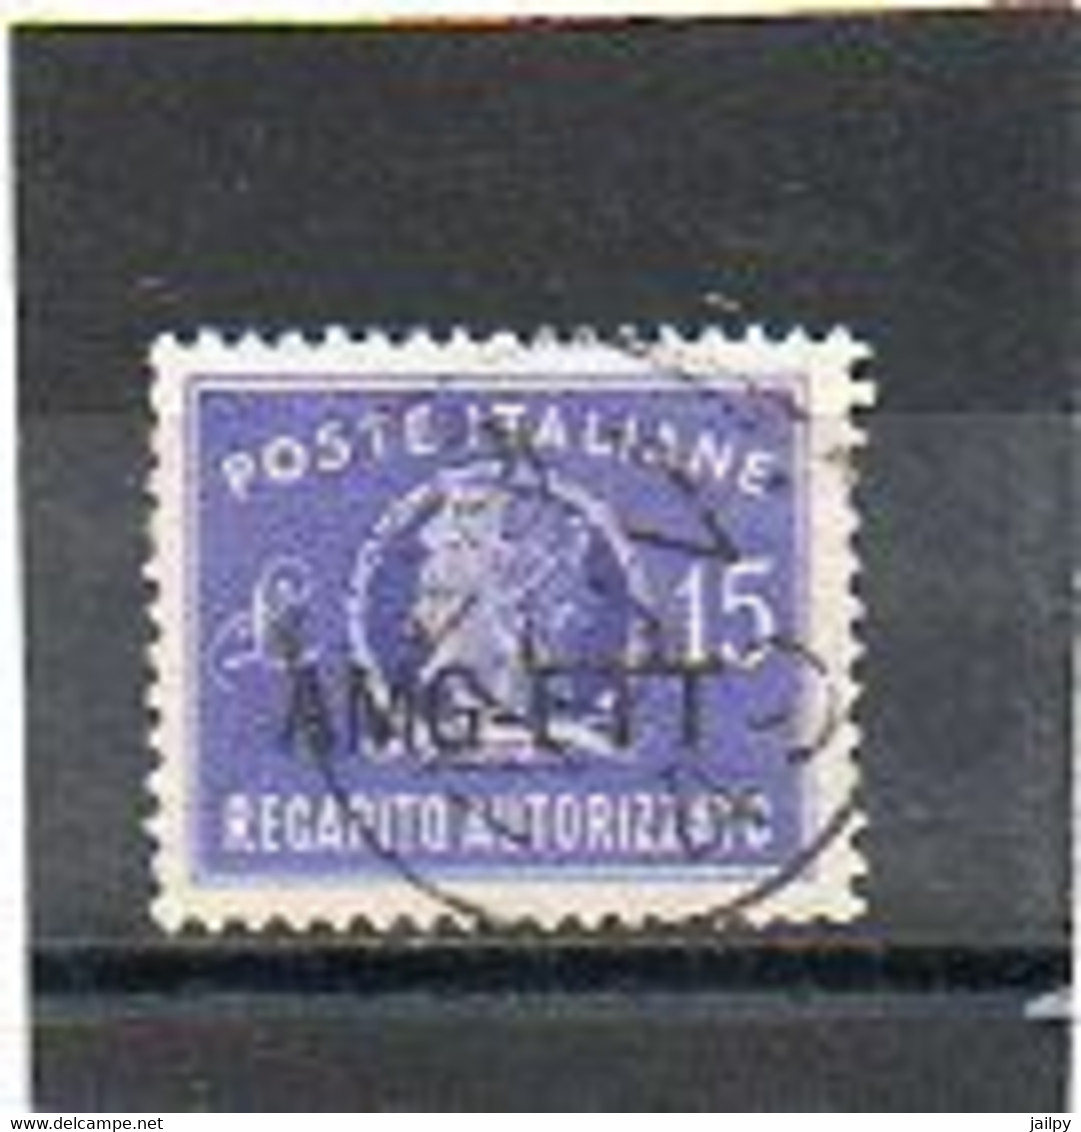 ITALIE   TRIESTE   AMG FTT    Timbre Fiscal    15 Lire   1949   Oblitéré - Fiscaux